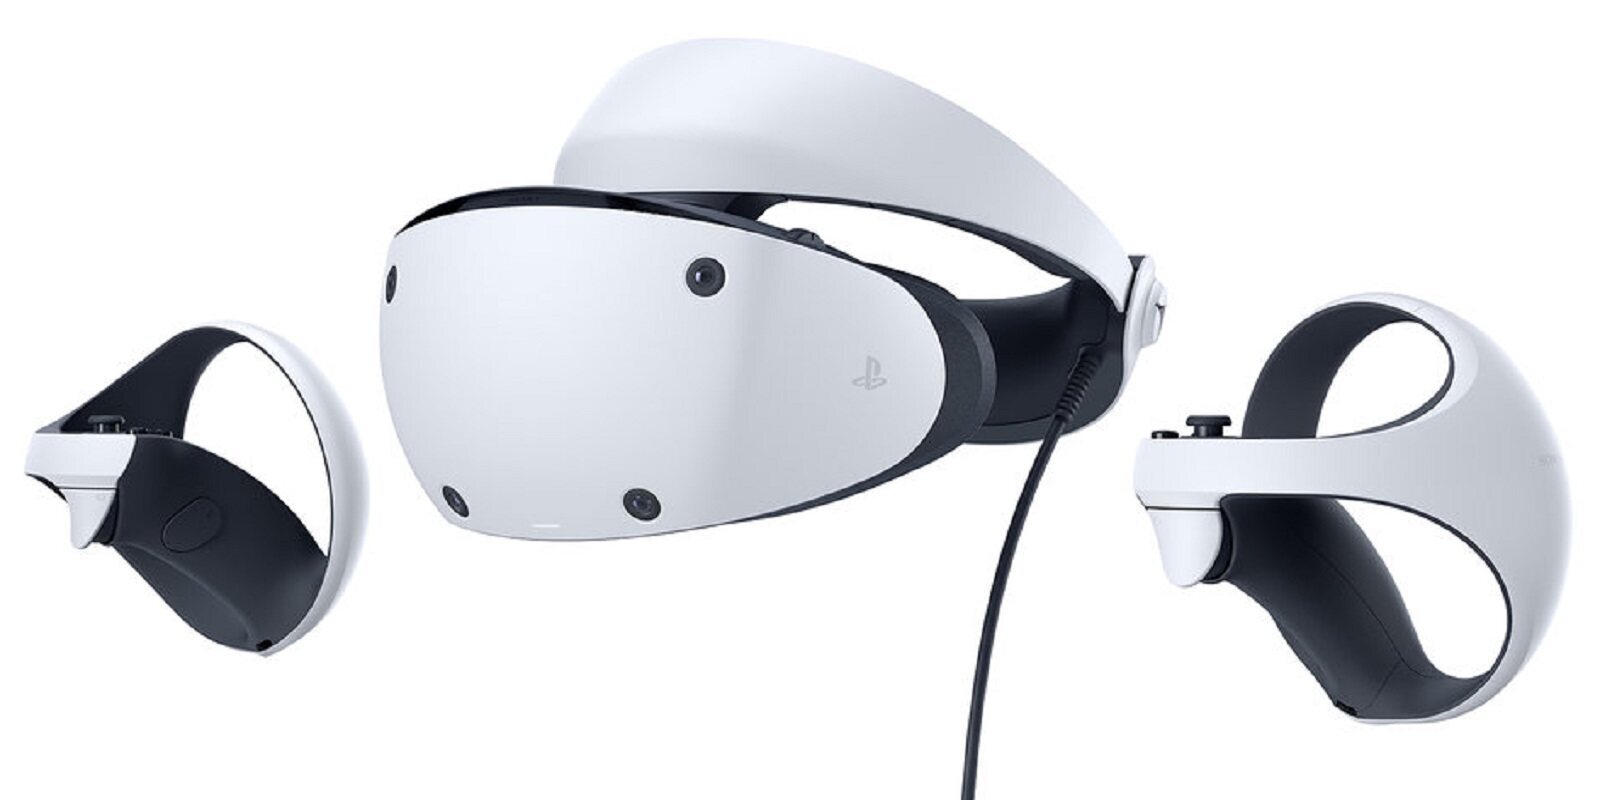 Sony confirma que PlayStation VR 2 tendrá un catálogo de lanzamiento de más de 20 juegos